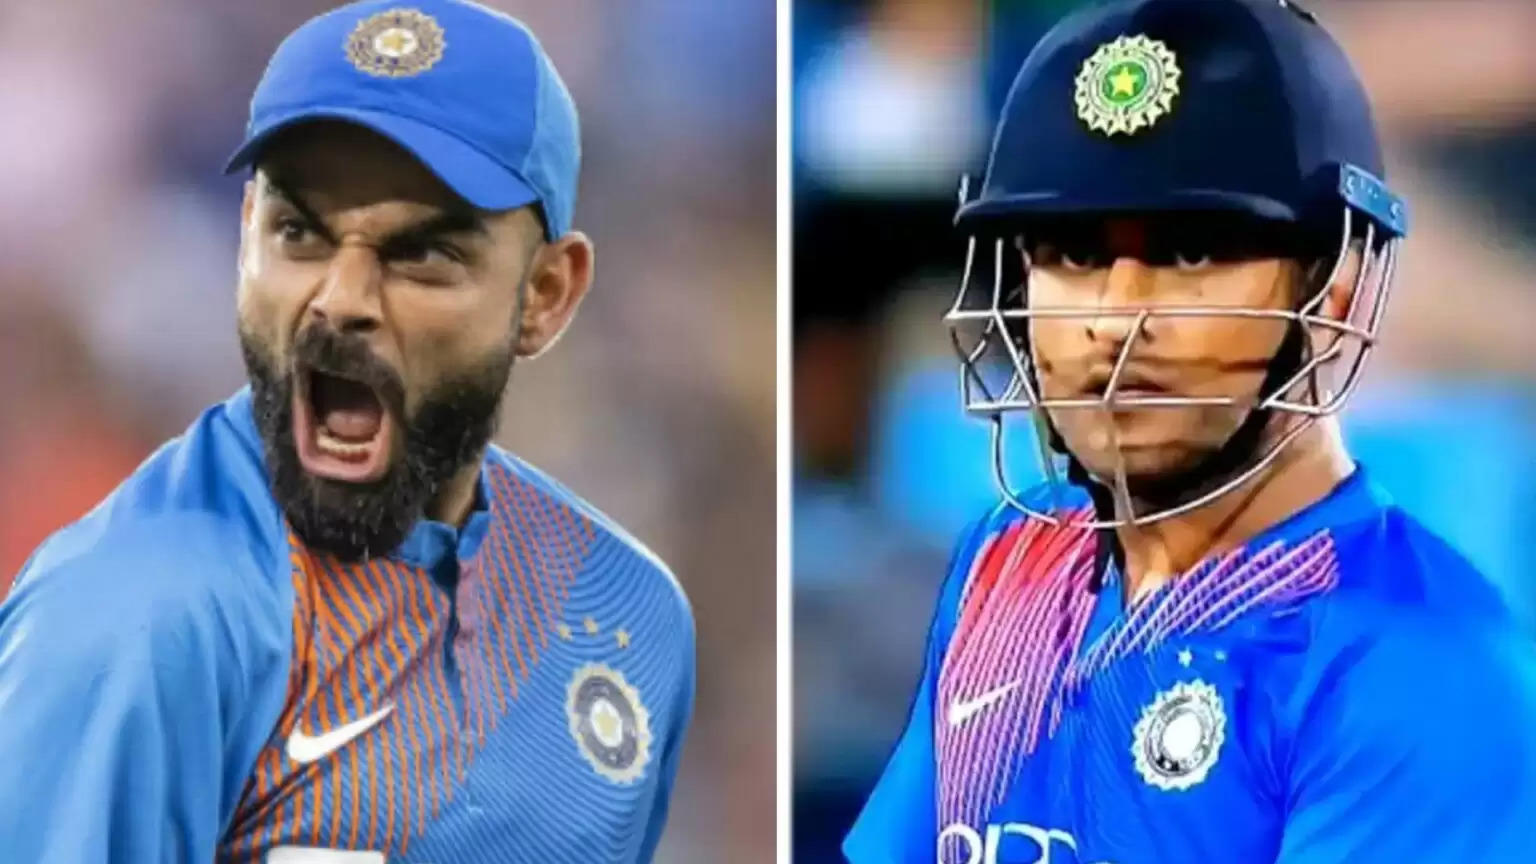 दो भारतीय स्टार खिलाड़ी जिन्होंने क्रिकेट को किया शर्मशार, अपनी ही टीम के साथी को दी थी सरेआम गाली!